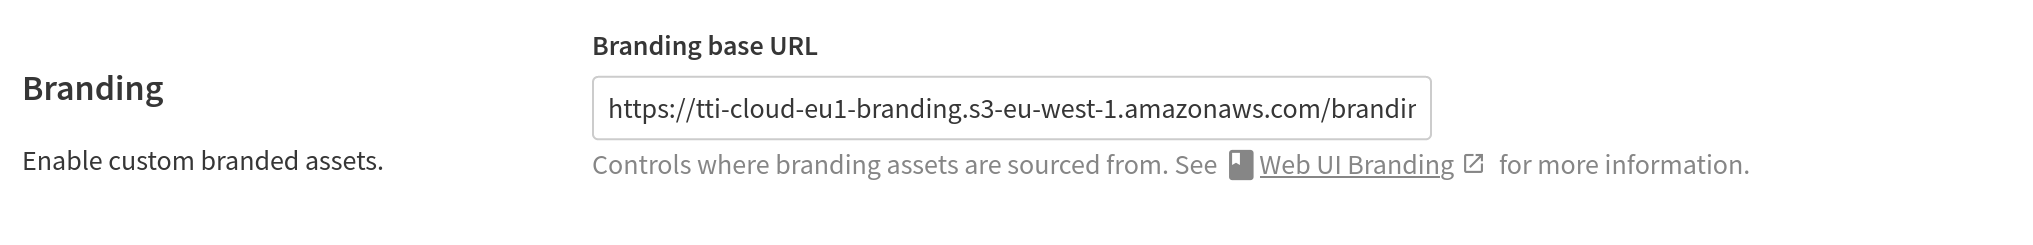 Branding assets source URL